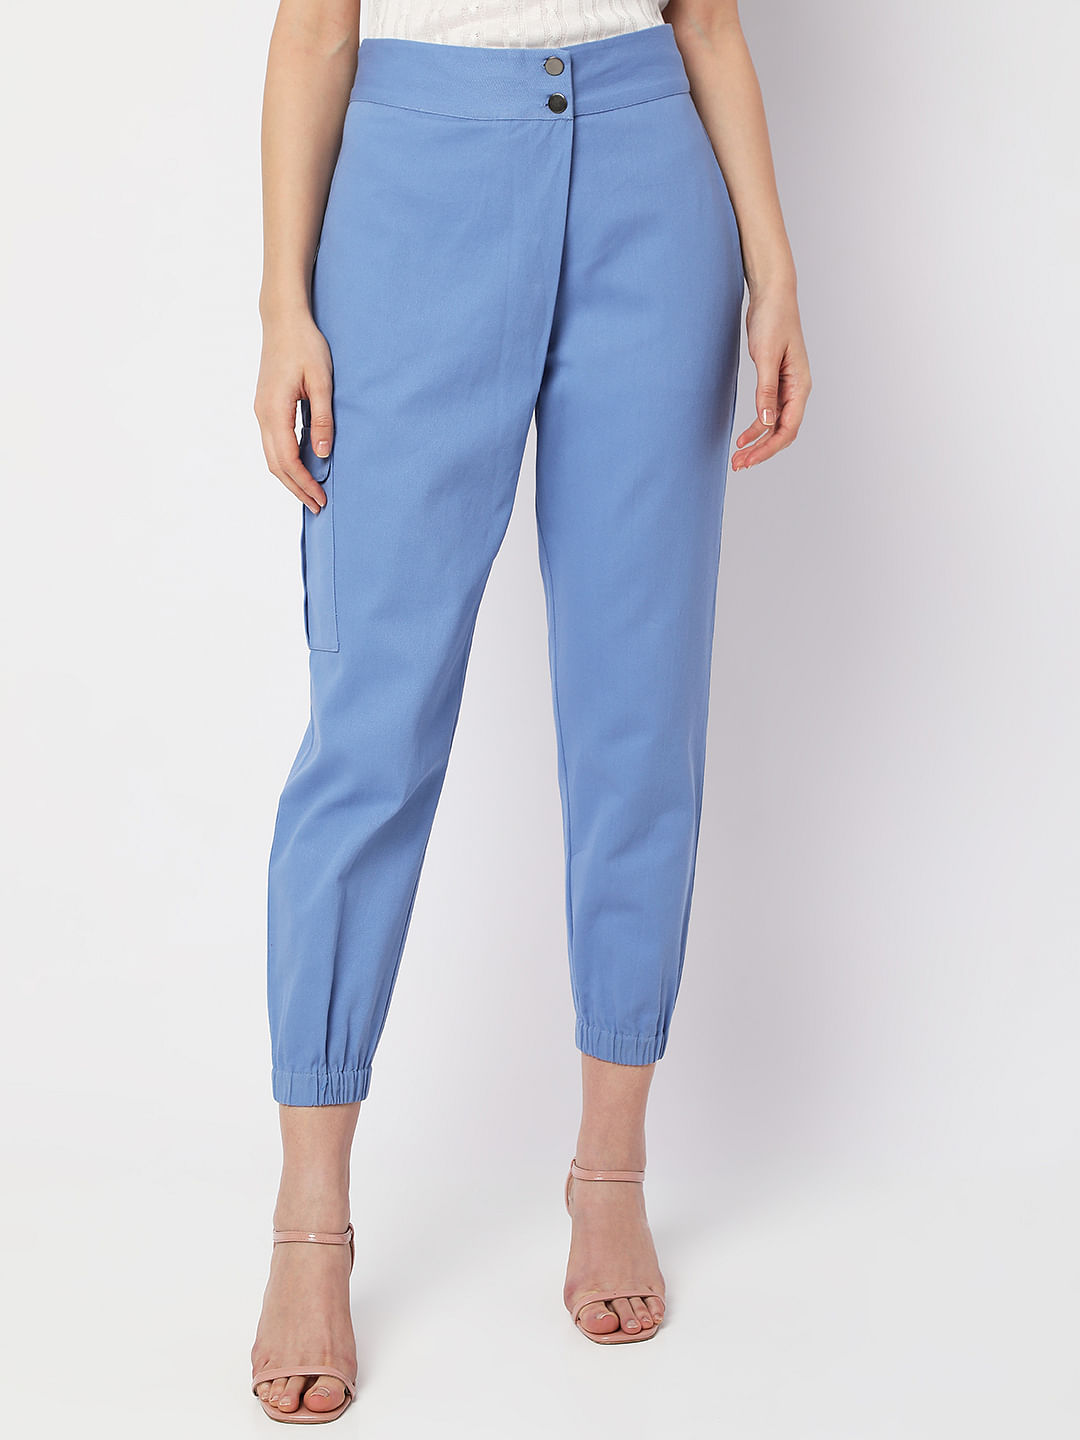 Light Blue High Waist Tailored Wide Leg Pants | PrettyLittleThing AUS